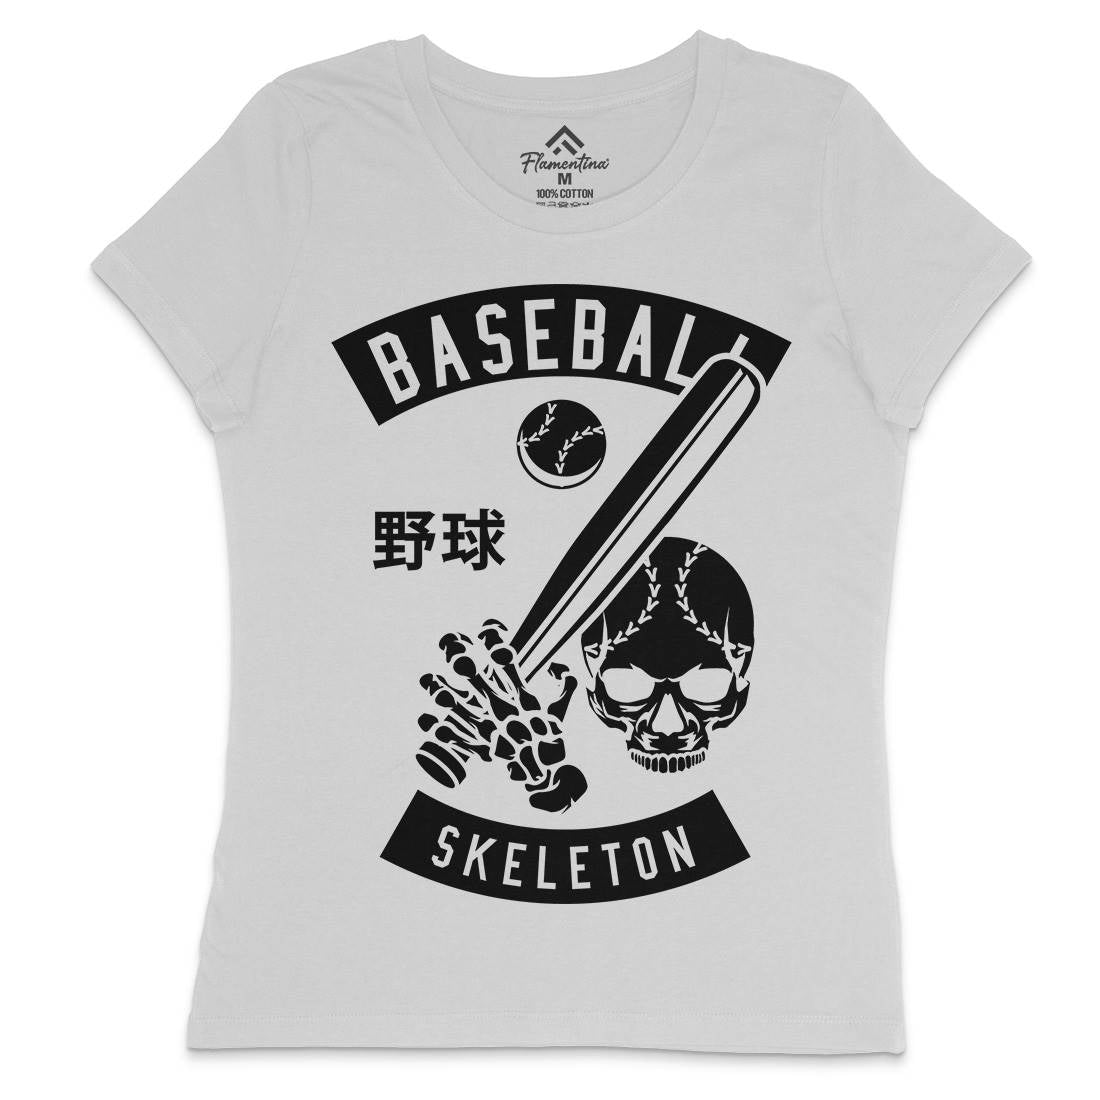 Baseball Skeleton Womens Crew Neck T-Shirt Sport B489